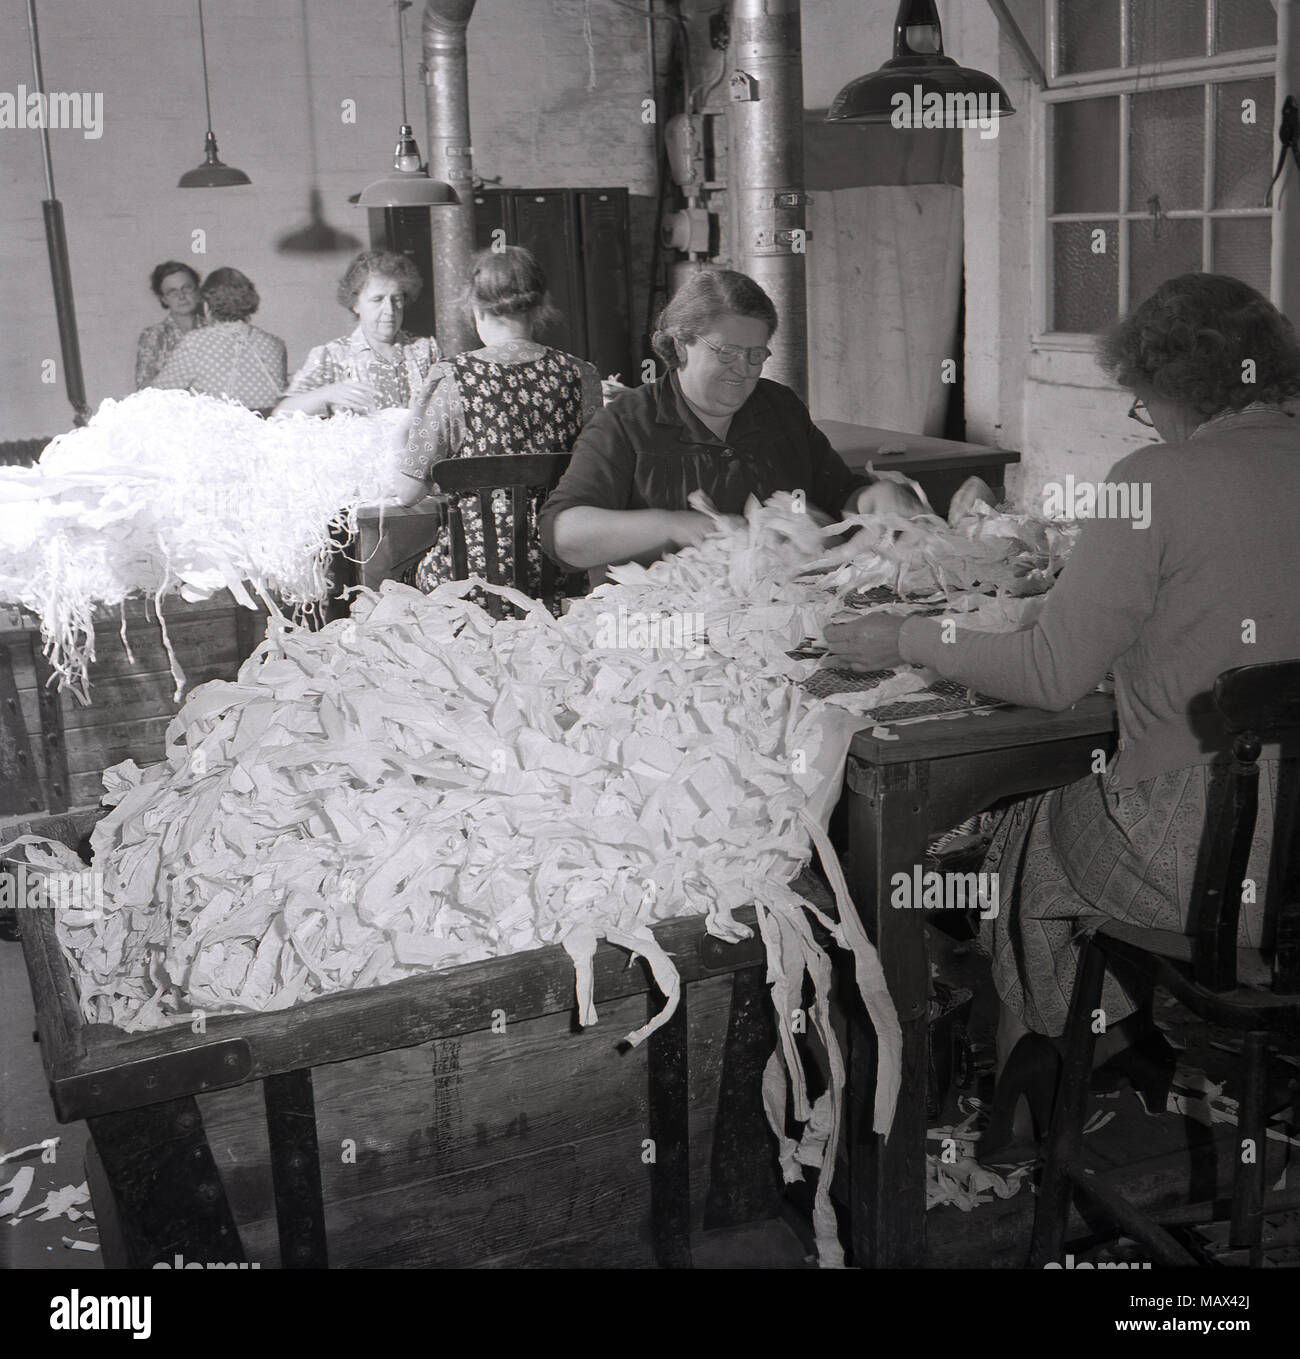 Anni '50, storico, le donne che lavorano all'interno di un piccolo mulino di cotone seduta l'una di fronte all'altra a banchi che smistano grandi fasci di residui o off-tagli di materiale, forse cotone, Inghilterra, Regno Unito. Foto Stock